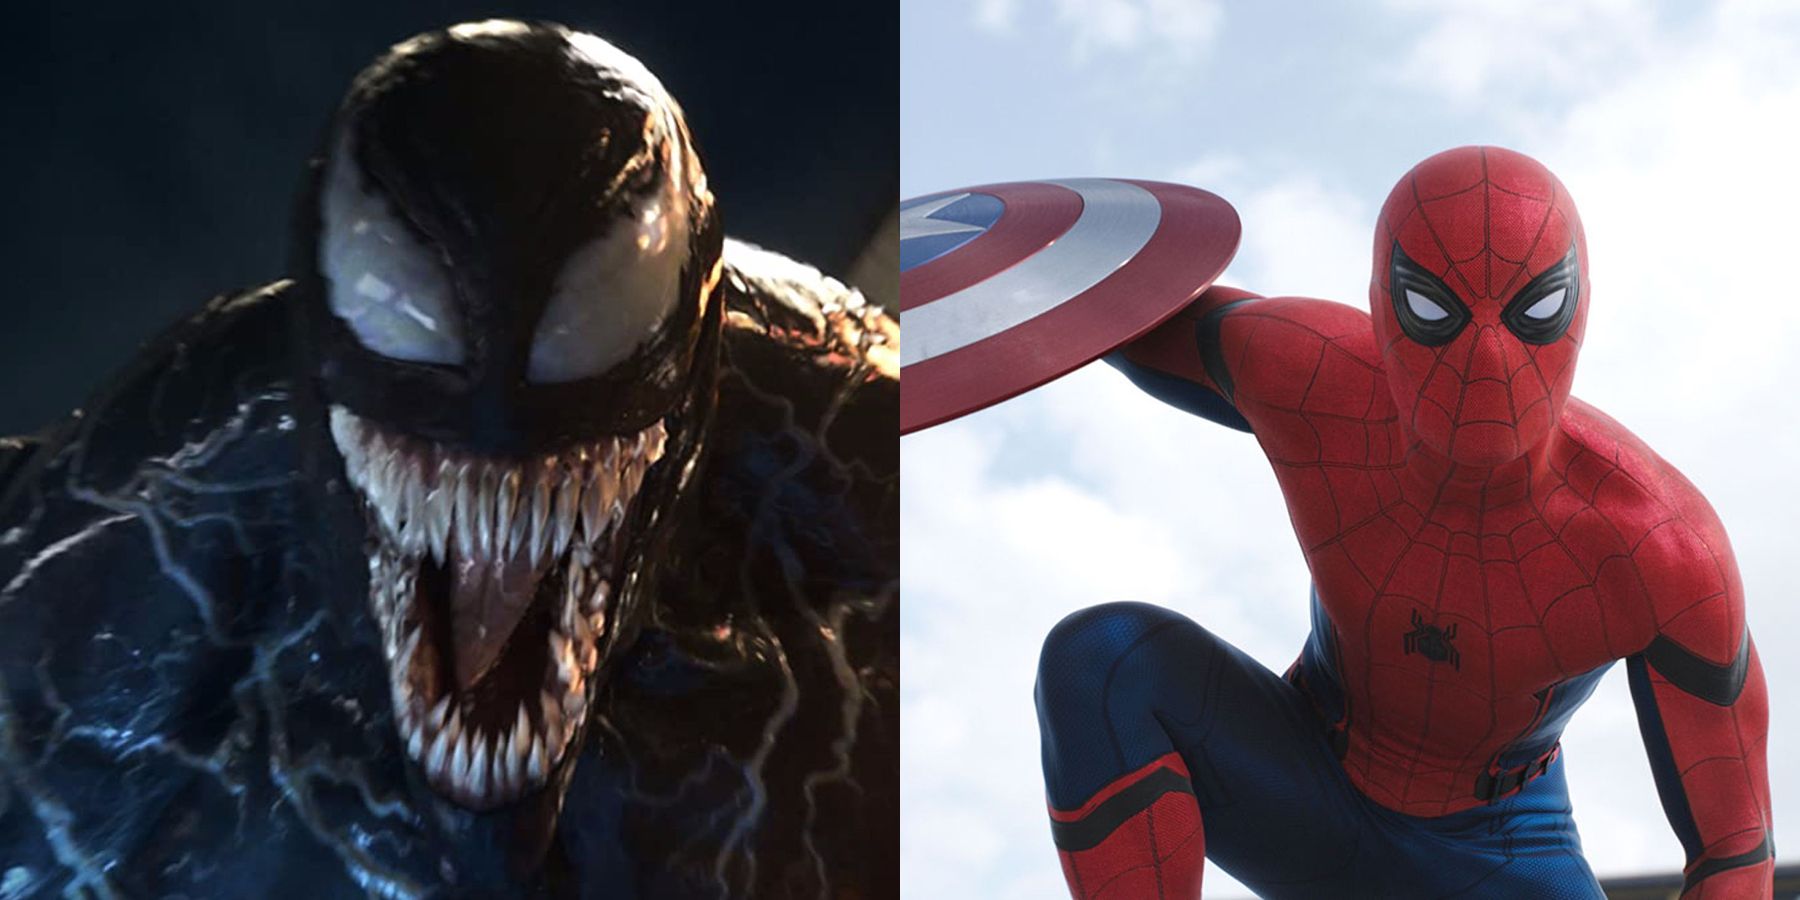 Venom 2 Director Andy Serkis Says SpiderMan Will Meet Venom One Day